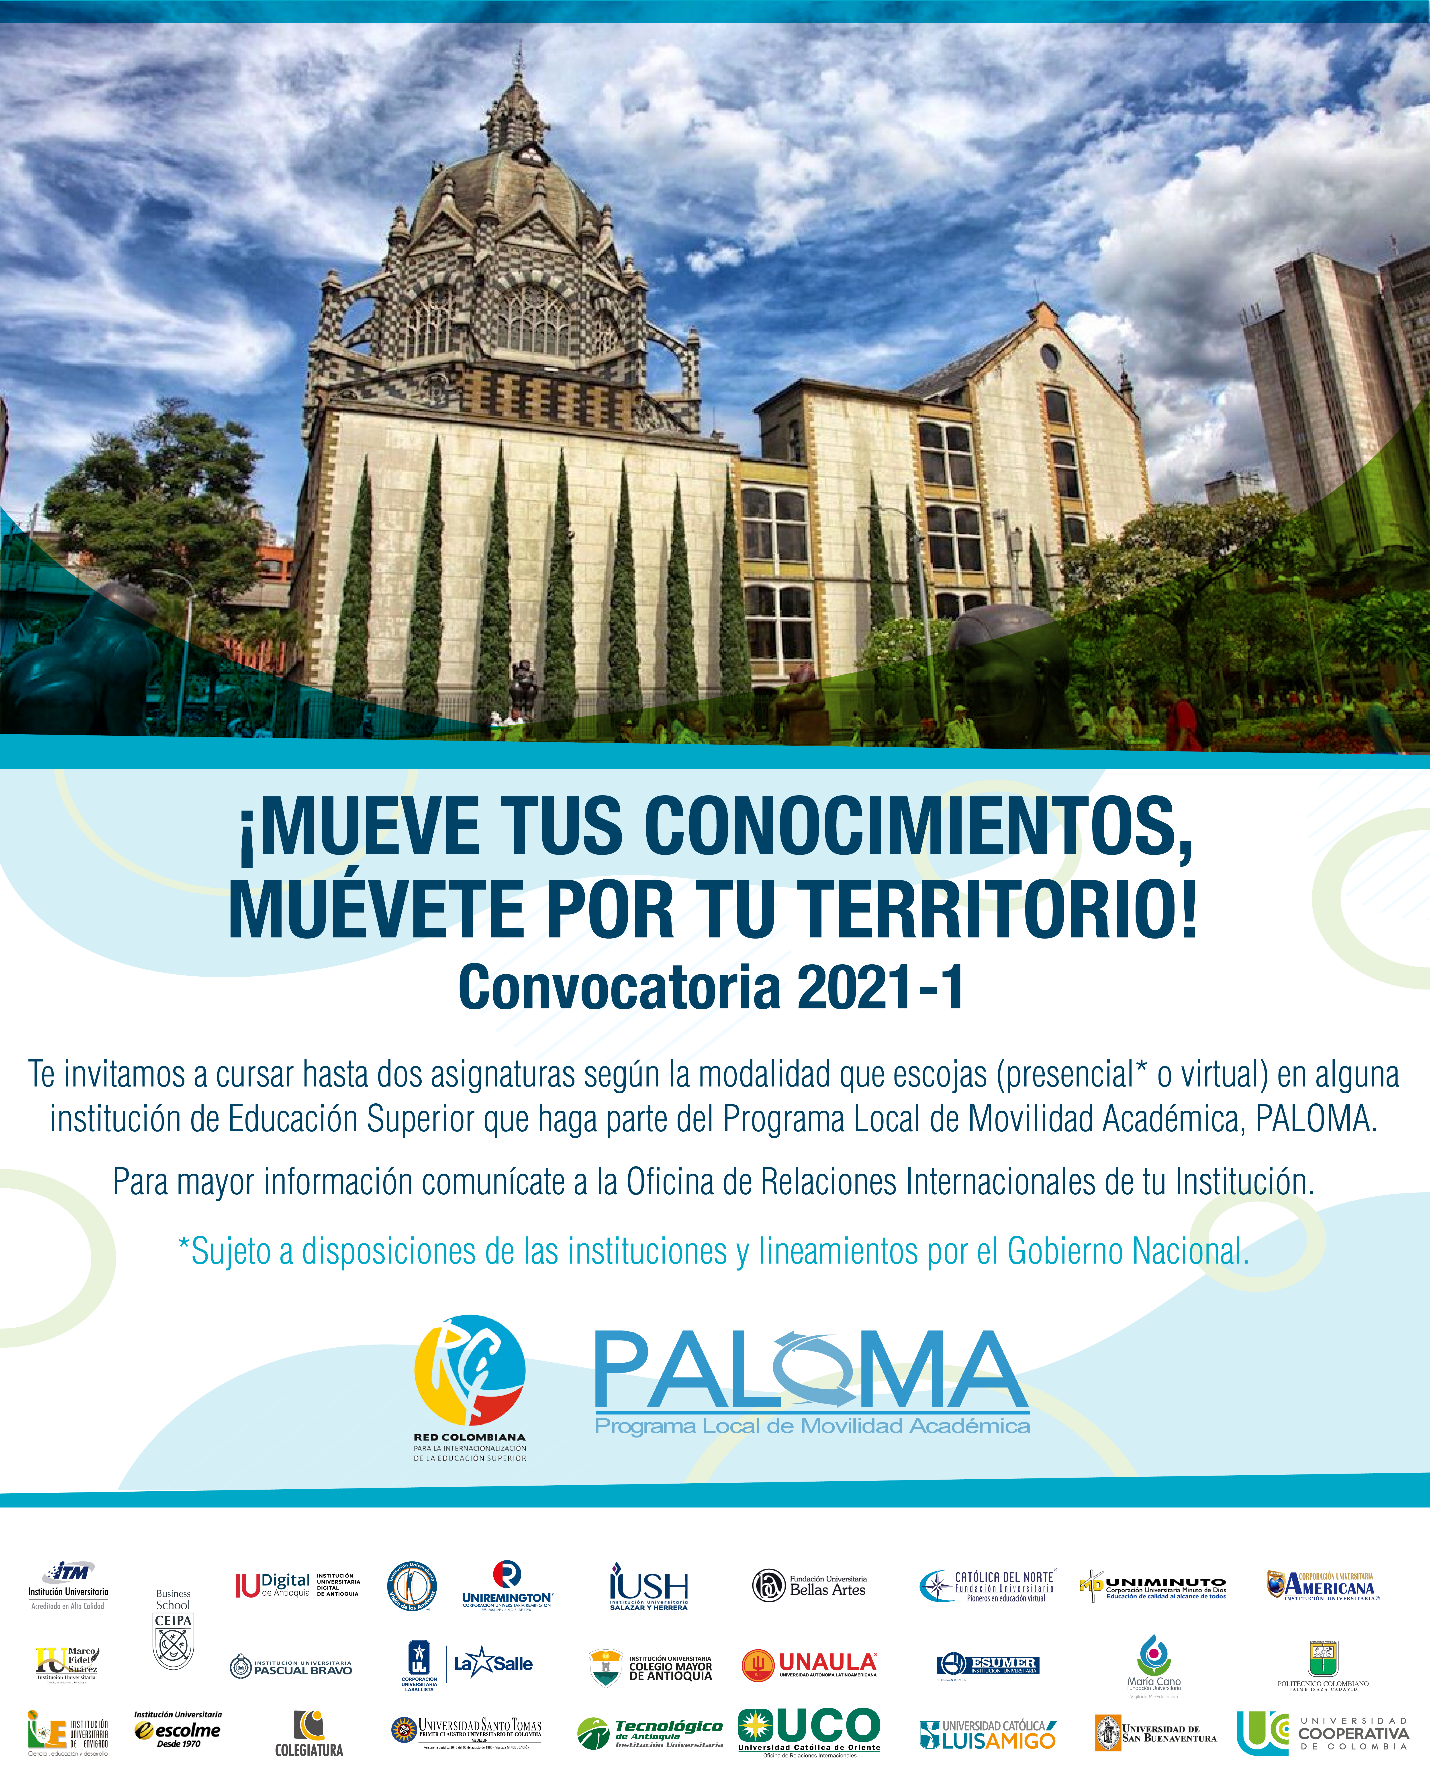 Inició la convocatoria del Programa Local de Movilidad Académica Paloma 2021-1